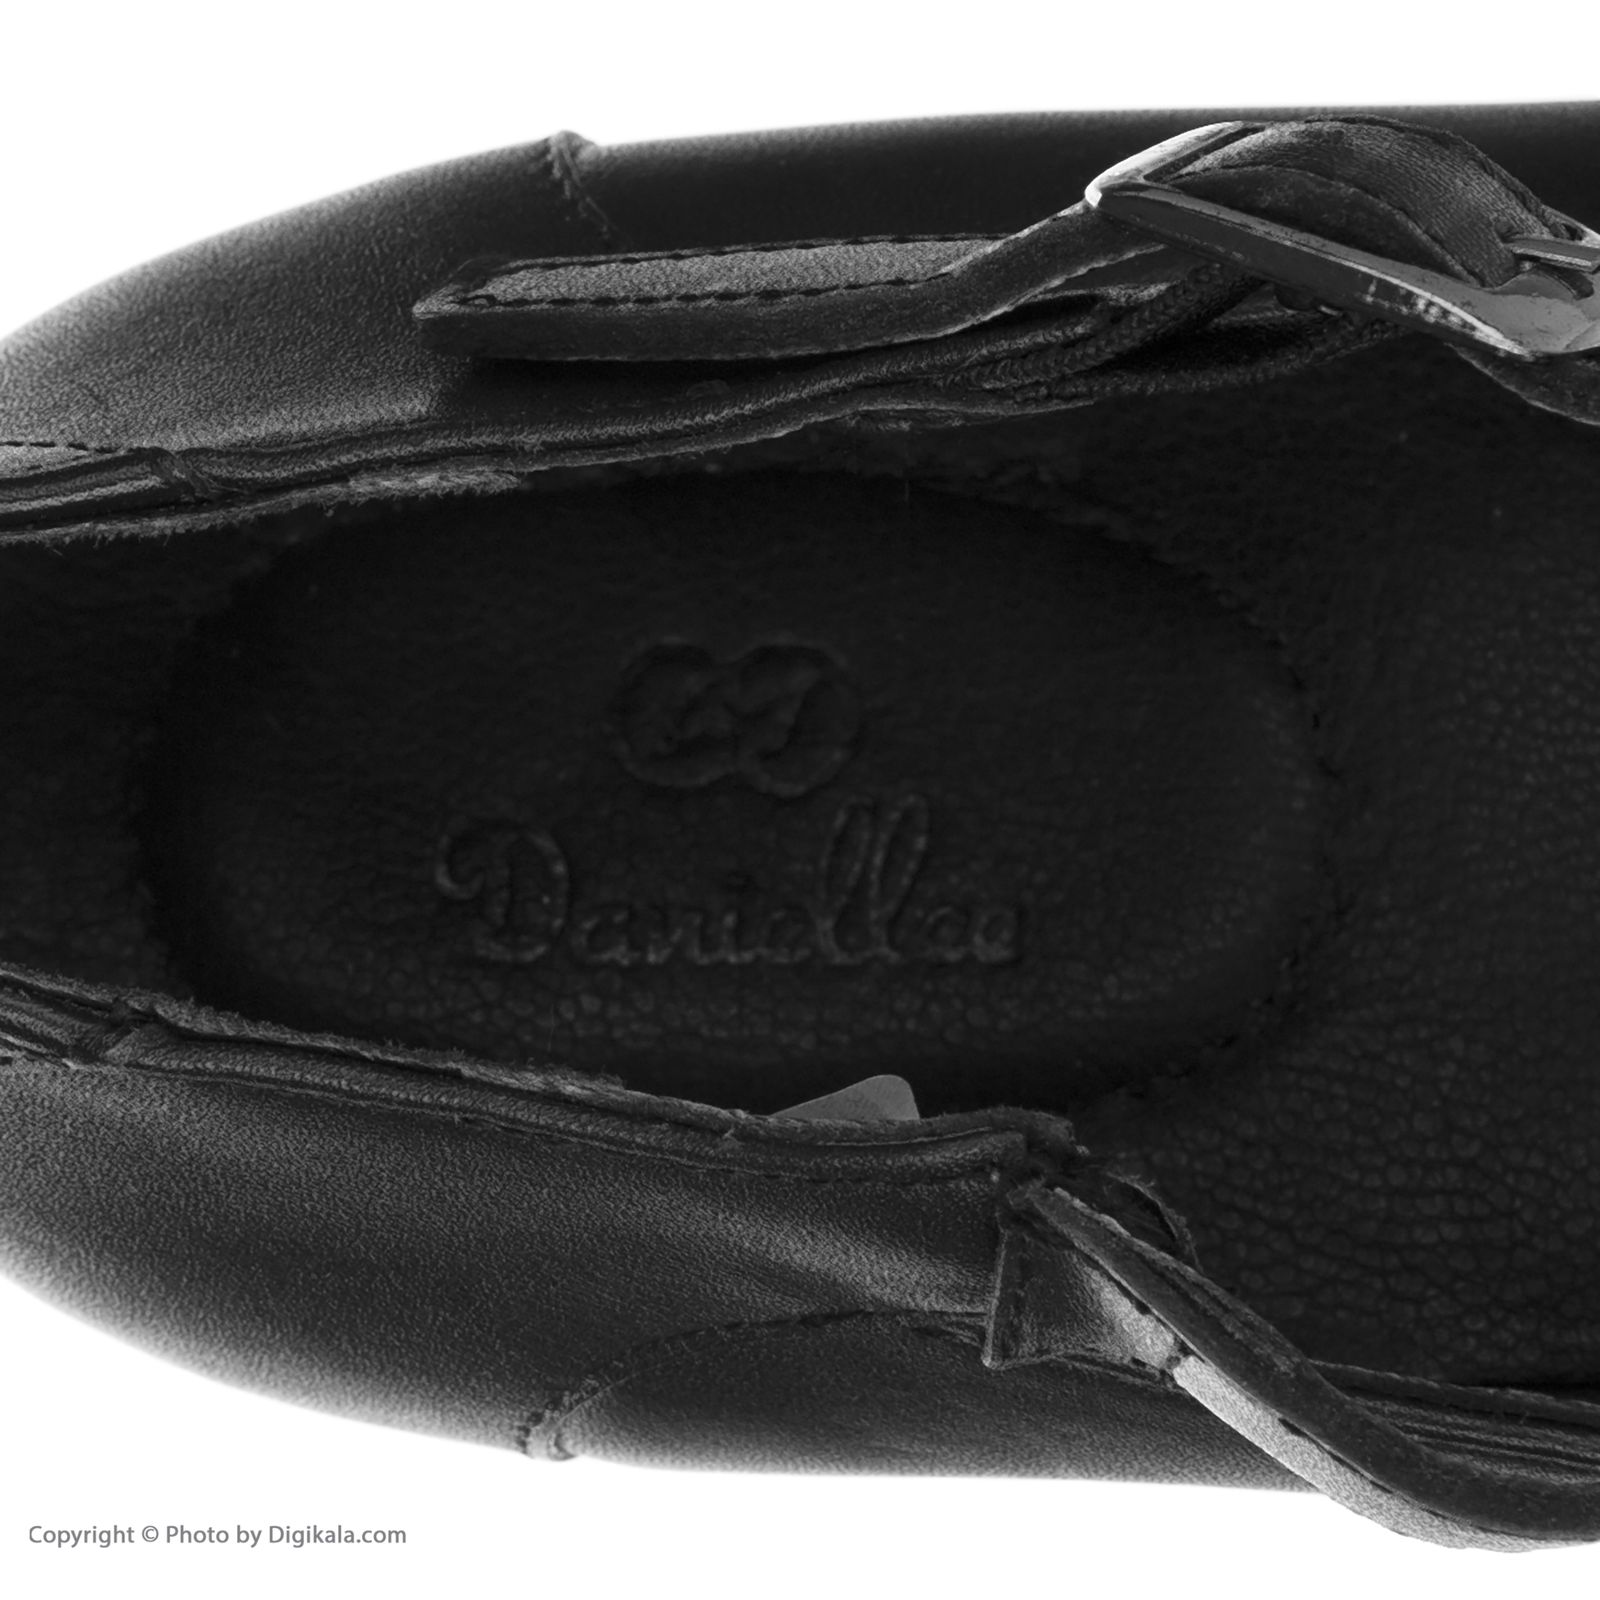 کفش زنانه دنیلی مدل Artmita - 207110401001 -  - 8